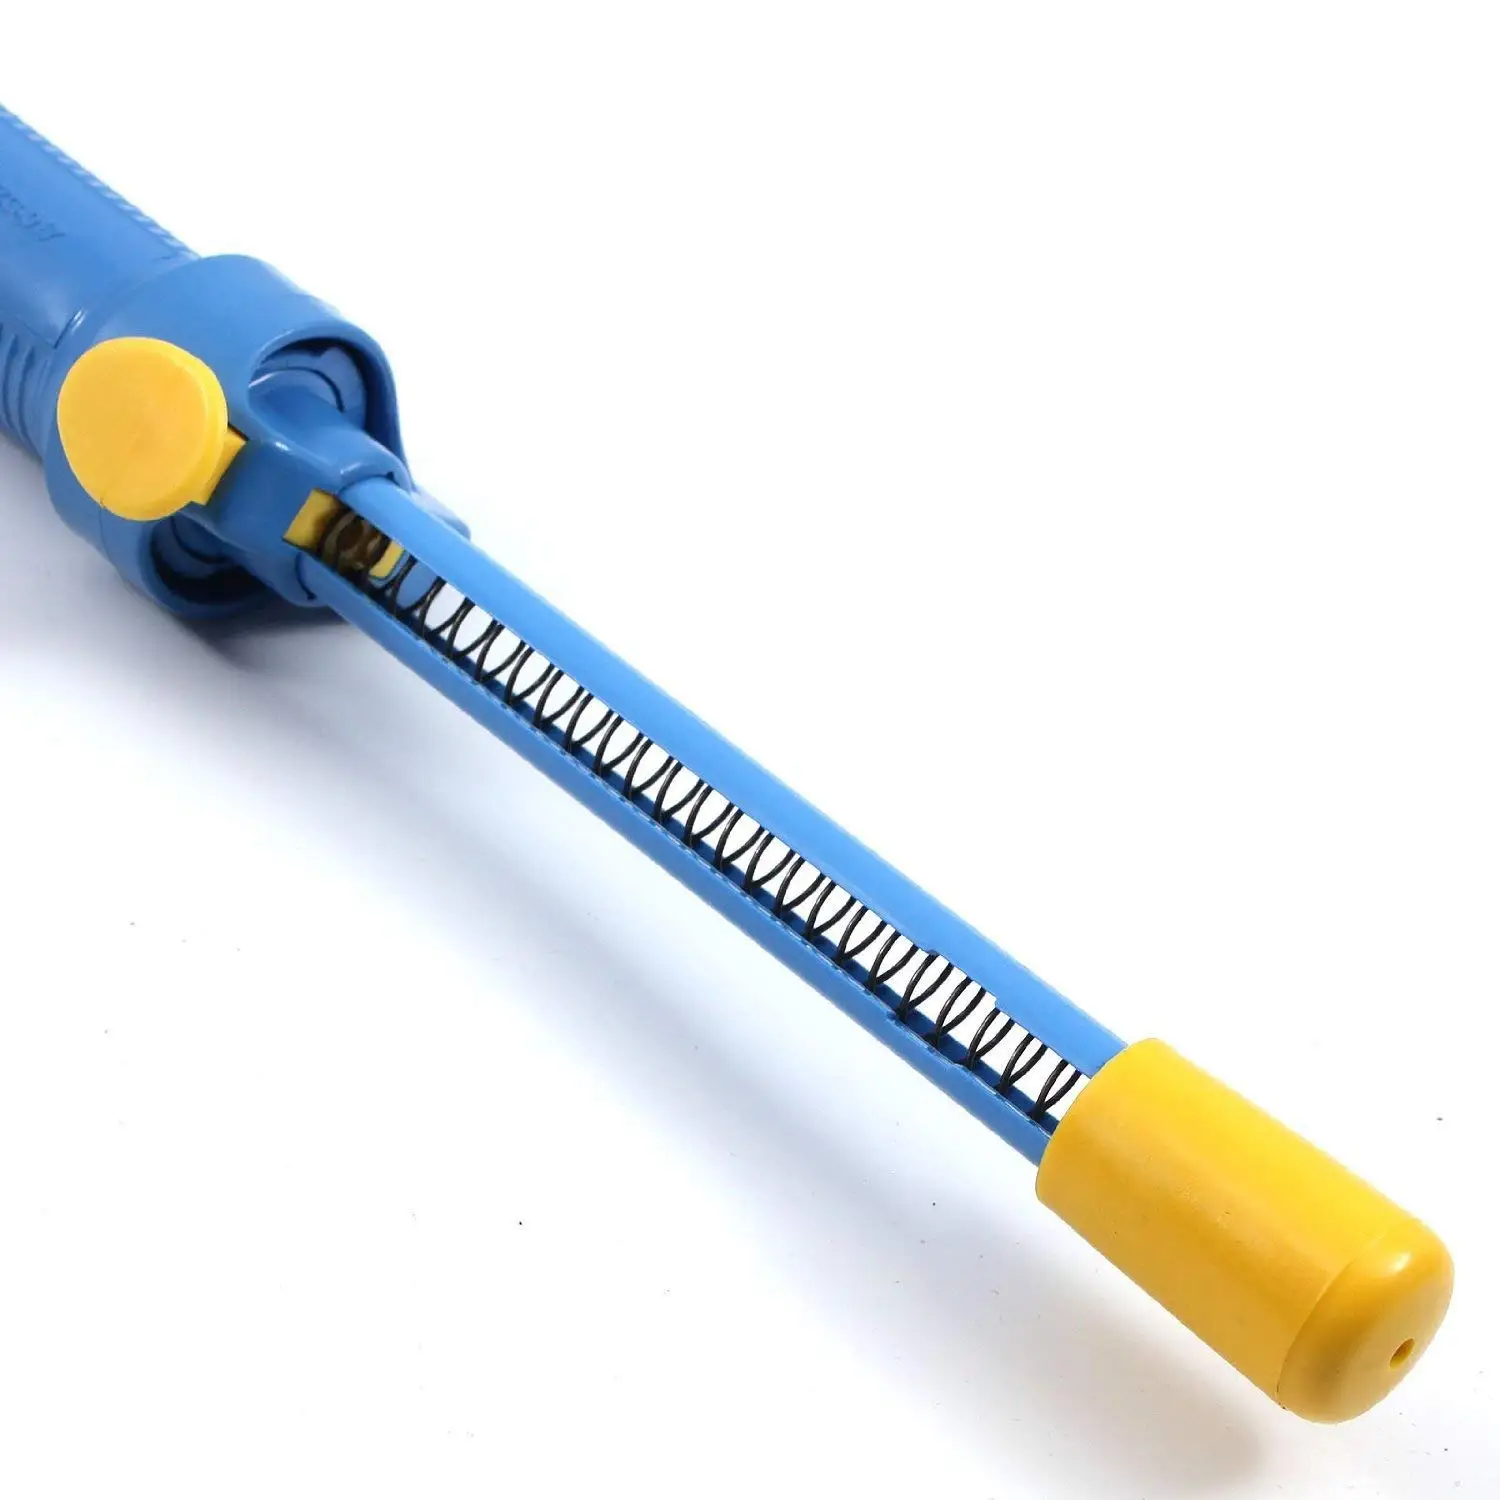 Deluxe серии отпайки насос паяльник для удаления присоска ручной инструмент-синий, пластик, сверхмощный